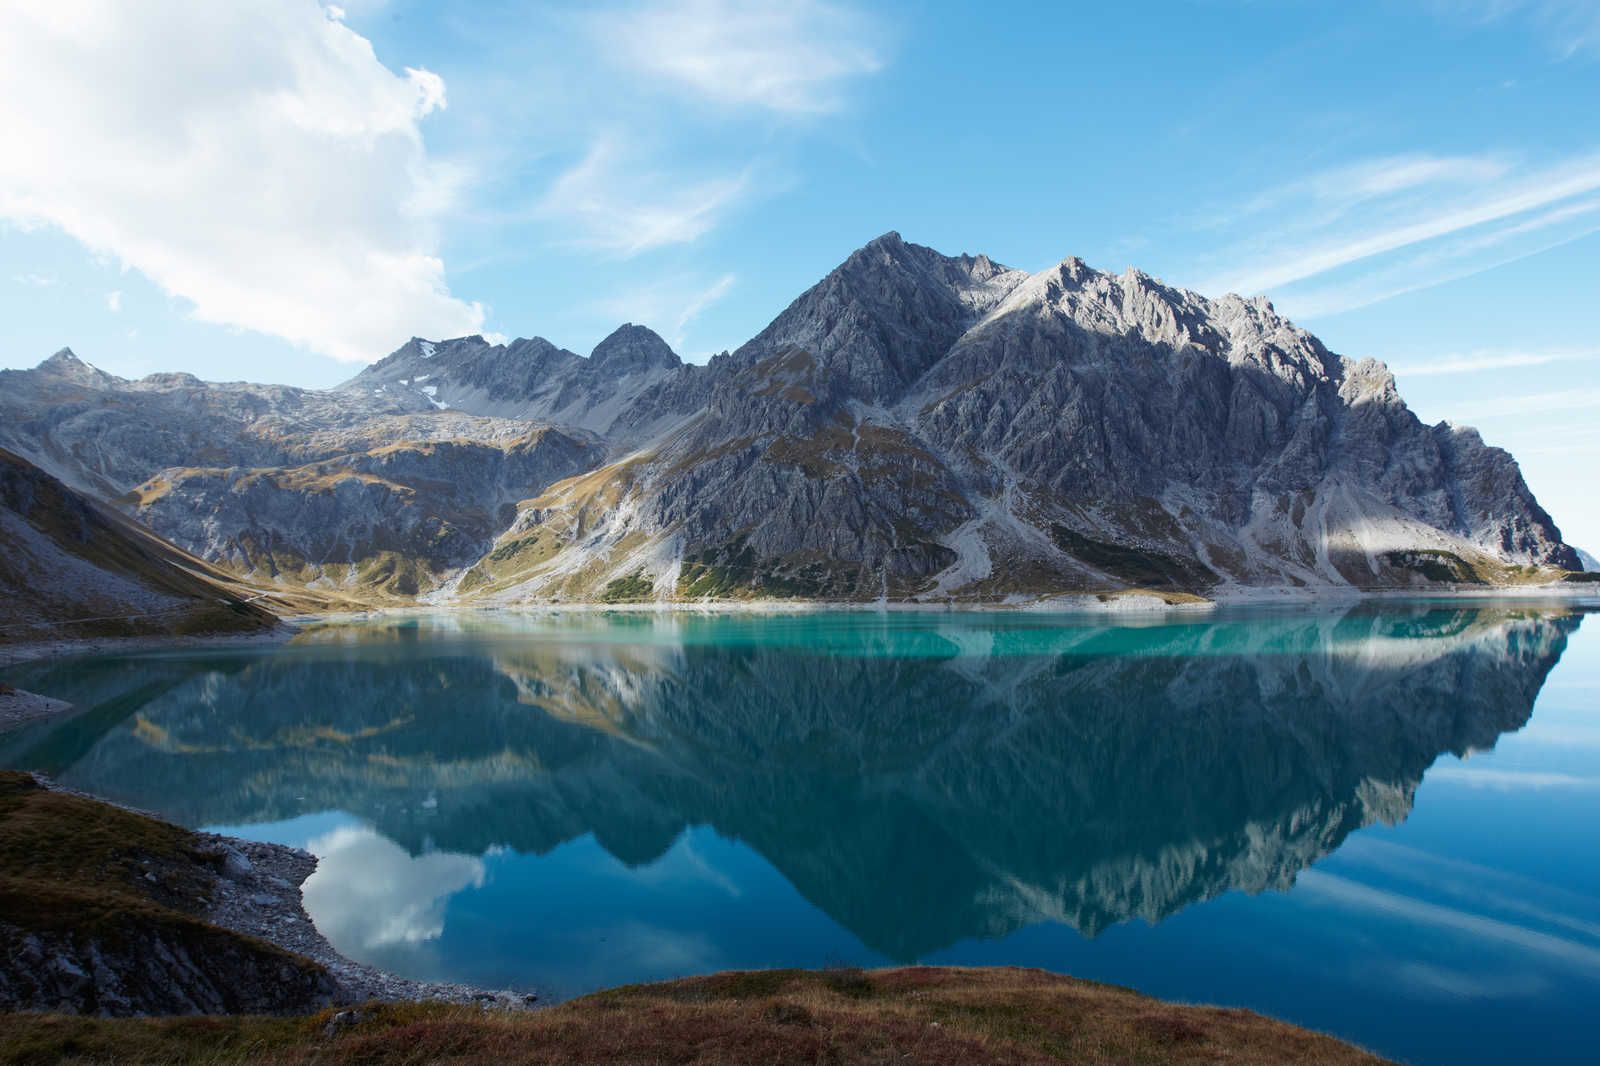             Lago di montagna Clear - Quadro su tela Natura Panorama Lago di montagna Idillio - 0,90 m x 0,60 m
        